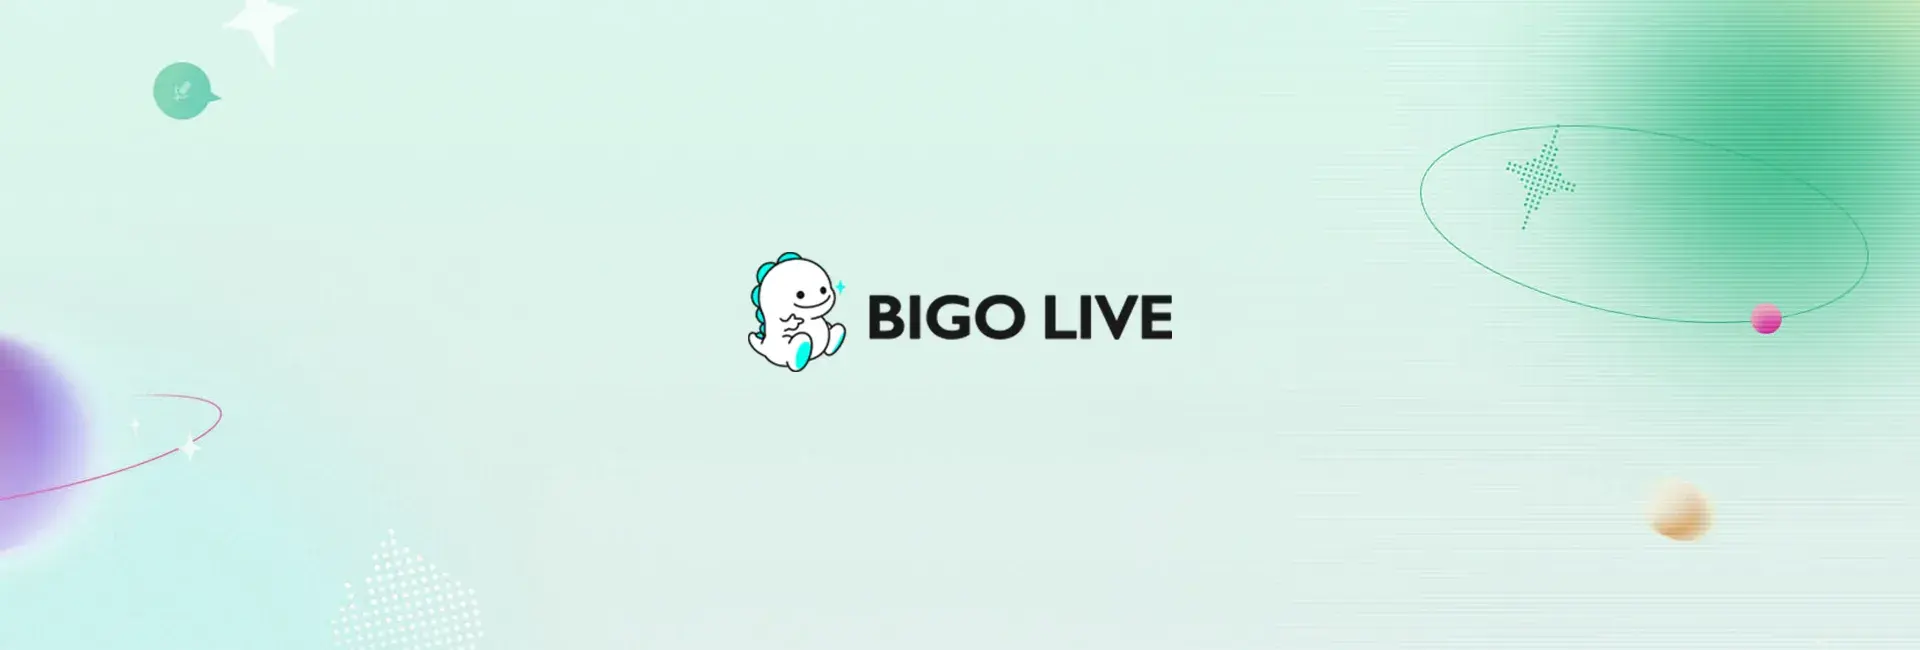 Bigo Live - 400 Diamonds (Global)